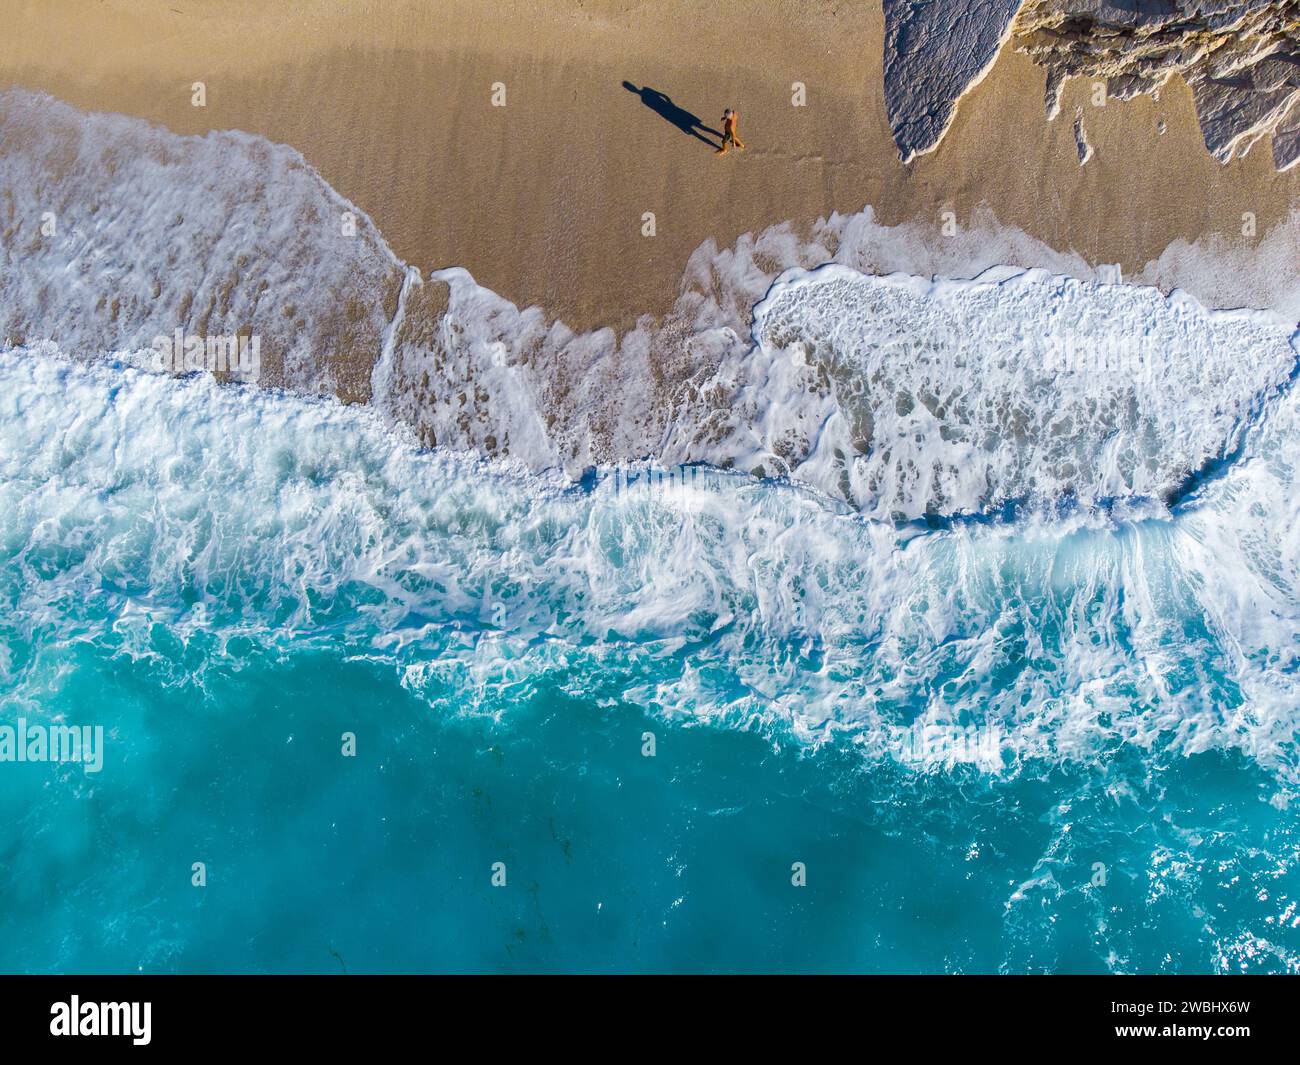 Belle plage tropicale avec sable jaune. Vagues de mer se brisant sur le rivage, images de drones aériens. Littoral. Plage de sable fin en été. Banque D'Images